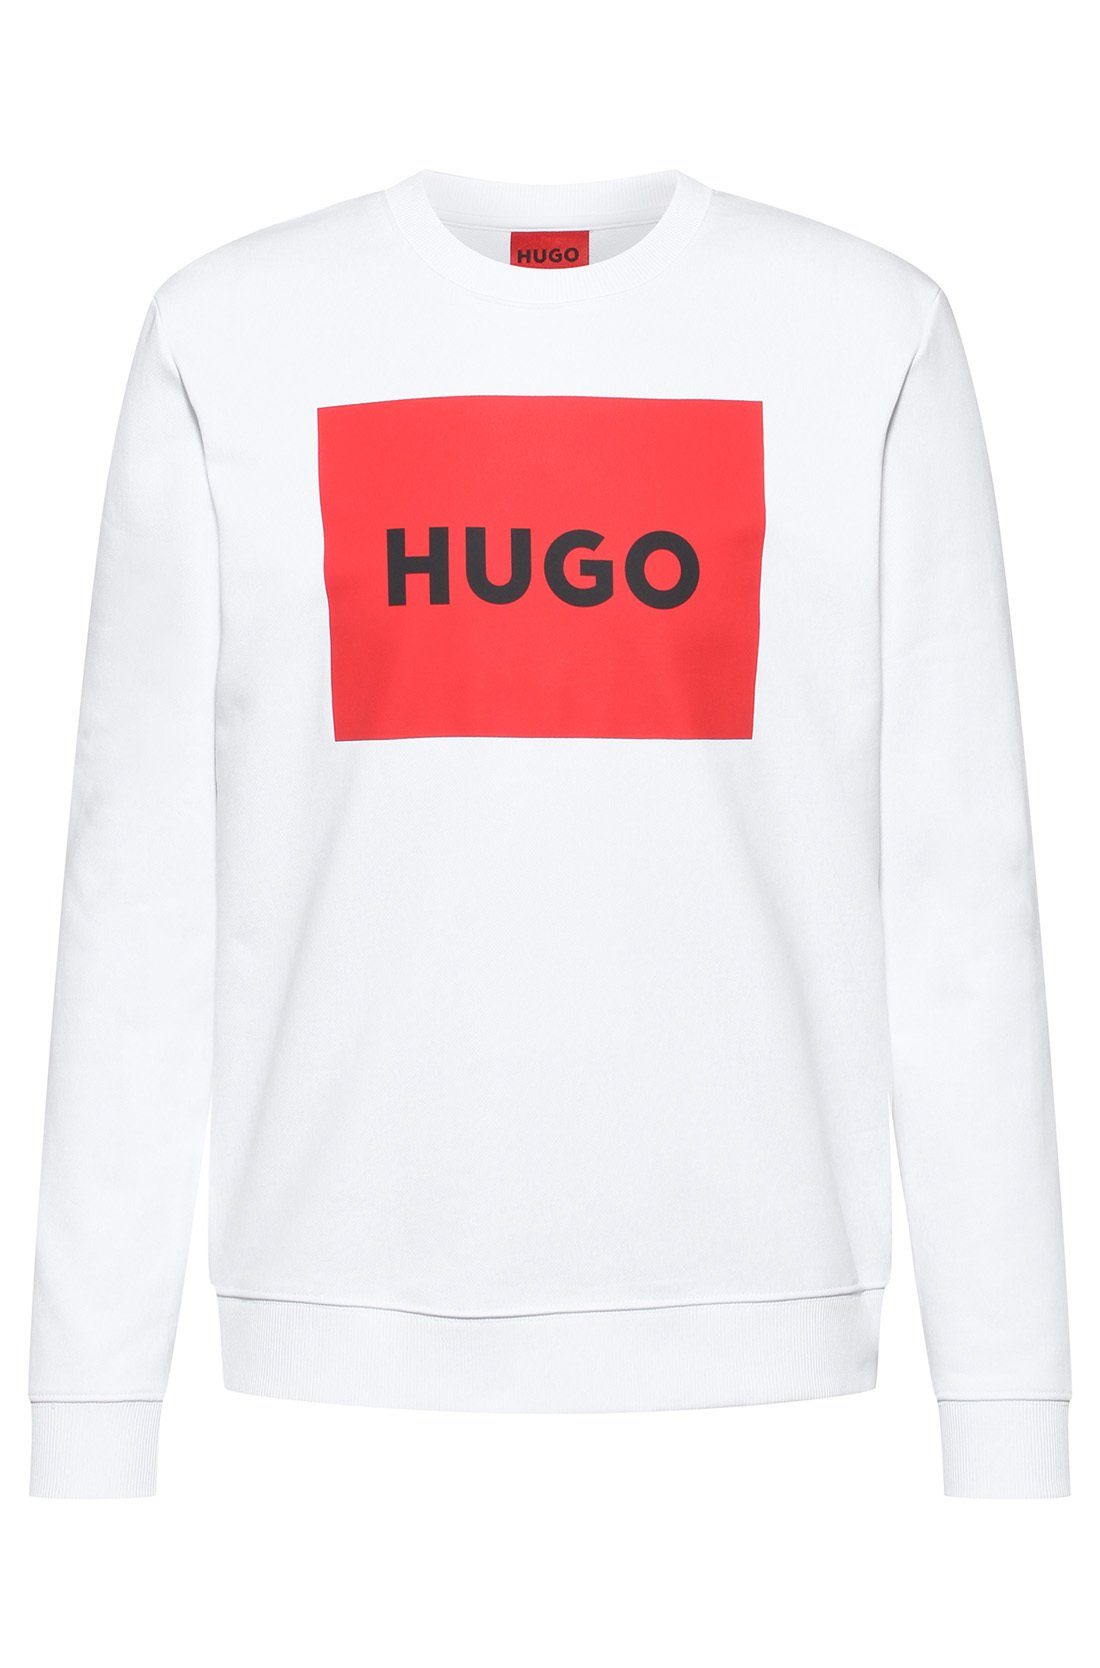 HUGO Sweatshirt Sweater Sweatshirt, - Duragol222, Rundhals Herren Weiß